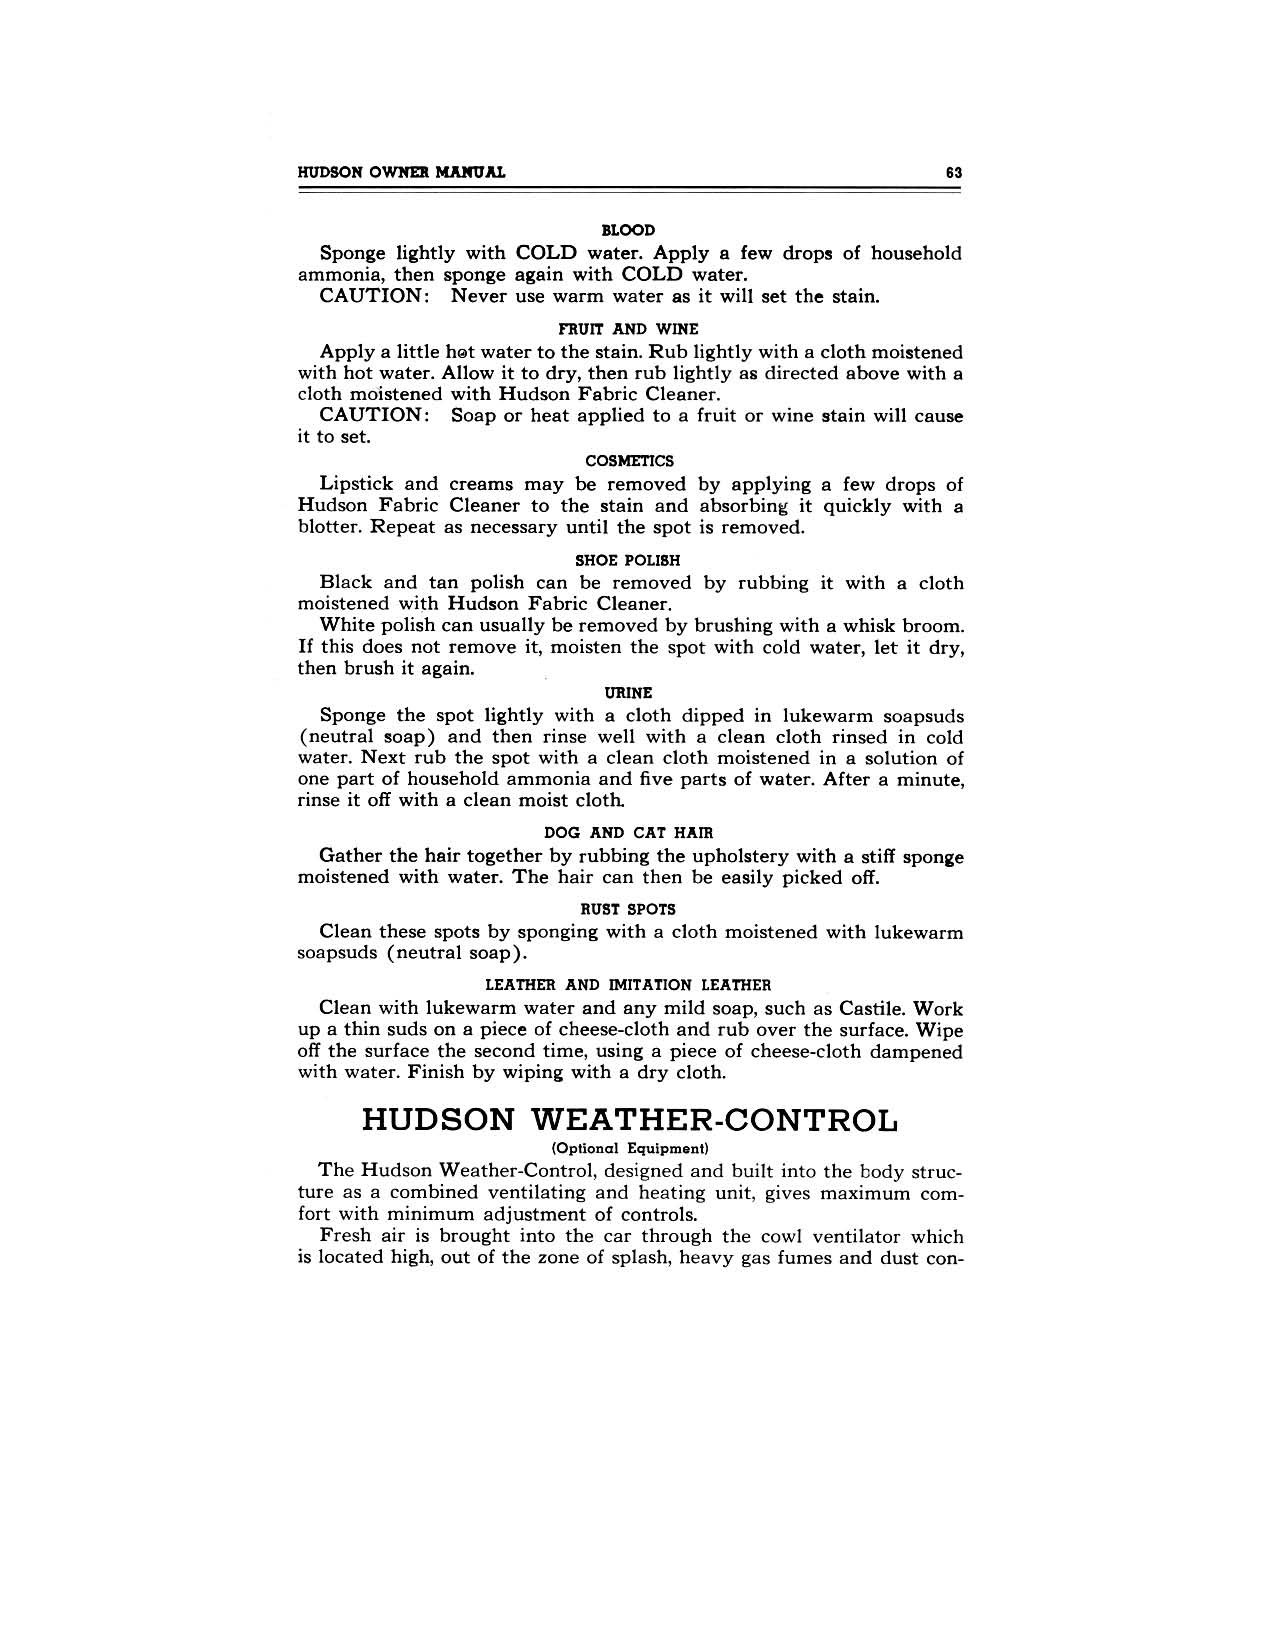 1949 Hudson Owners Manual-65